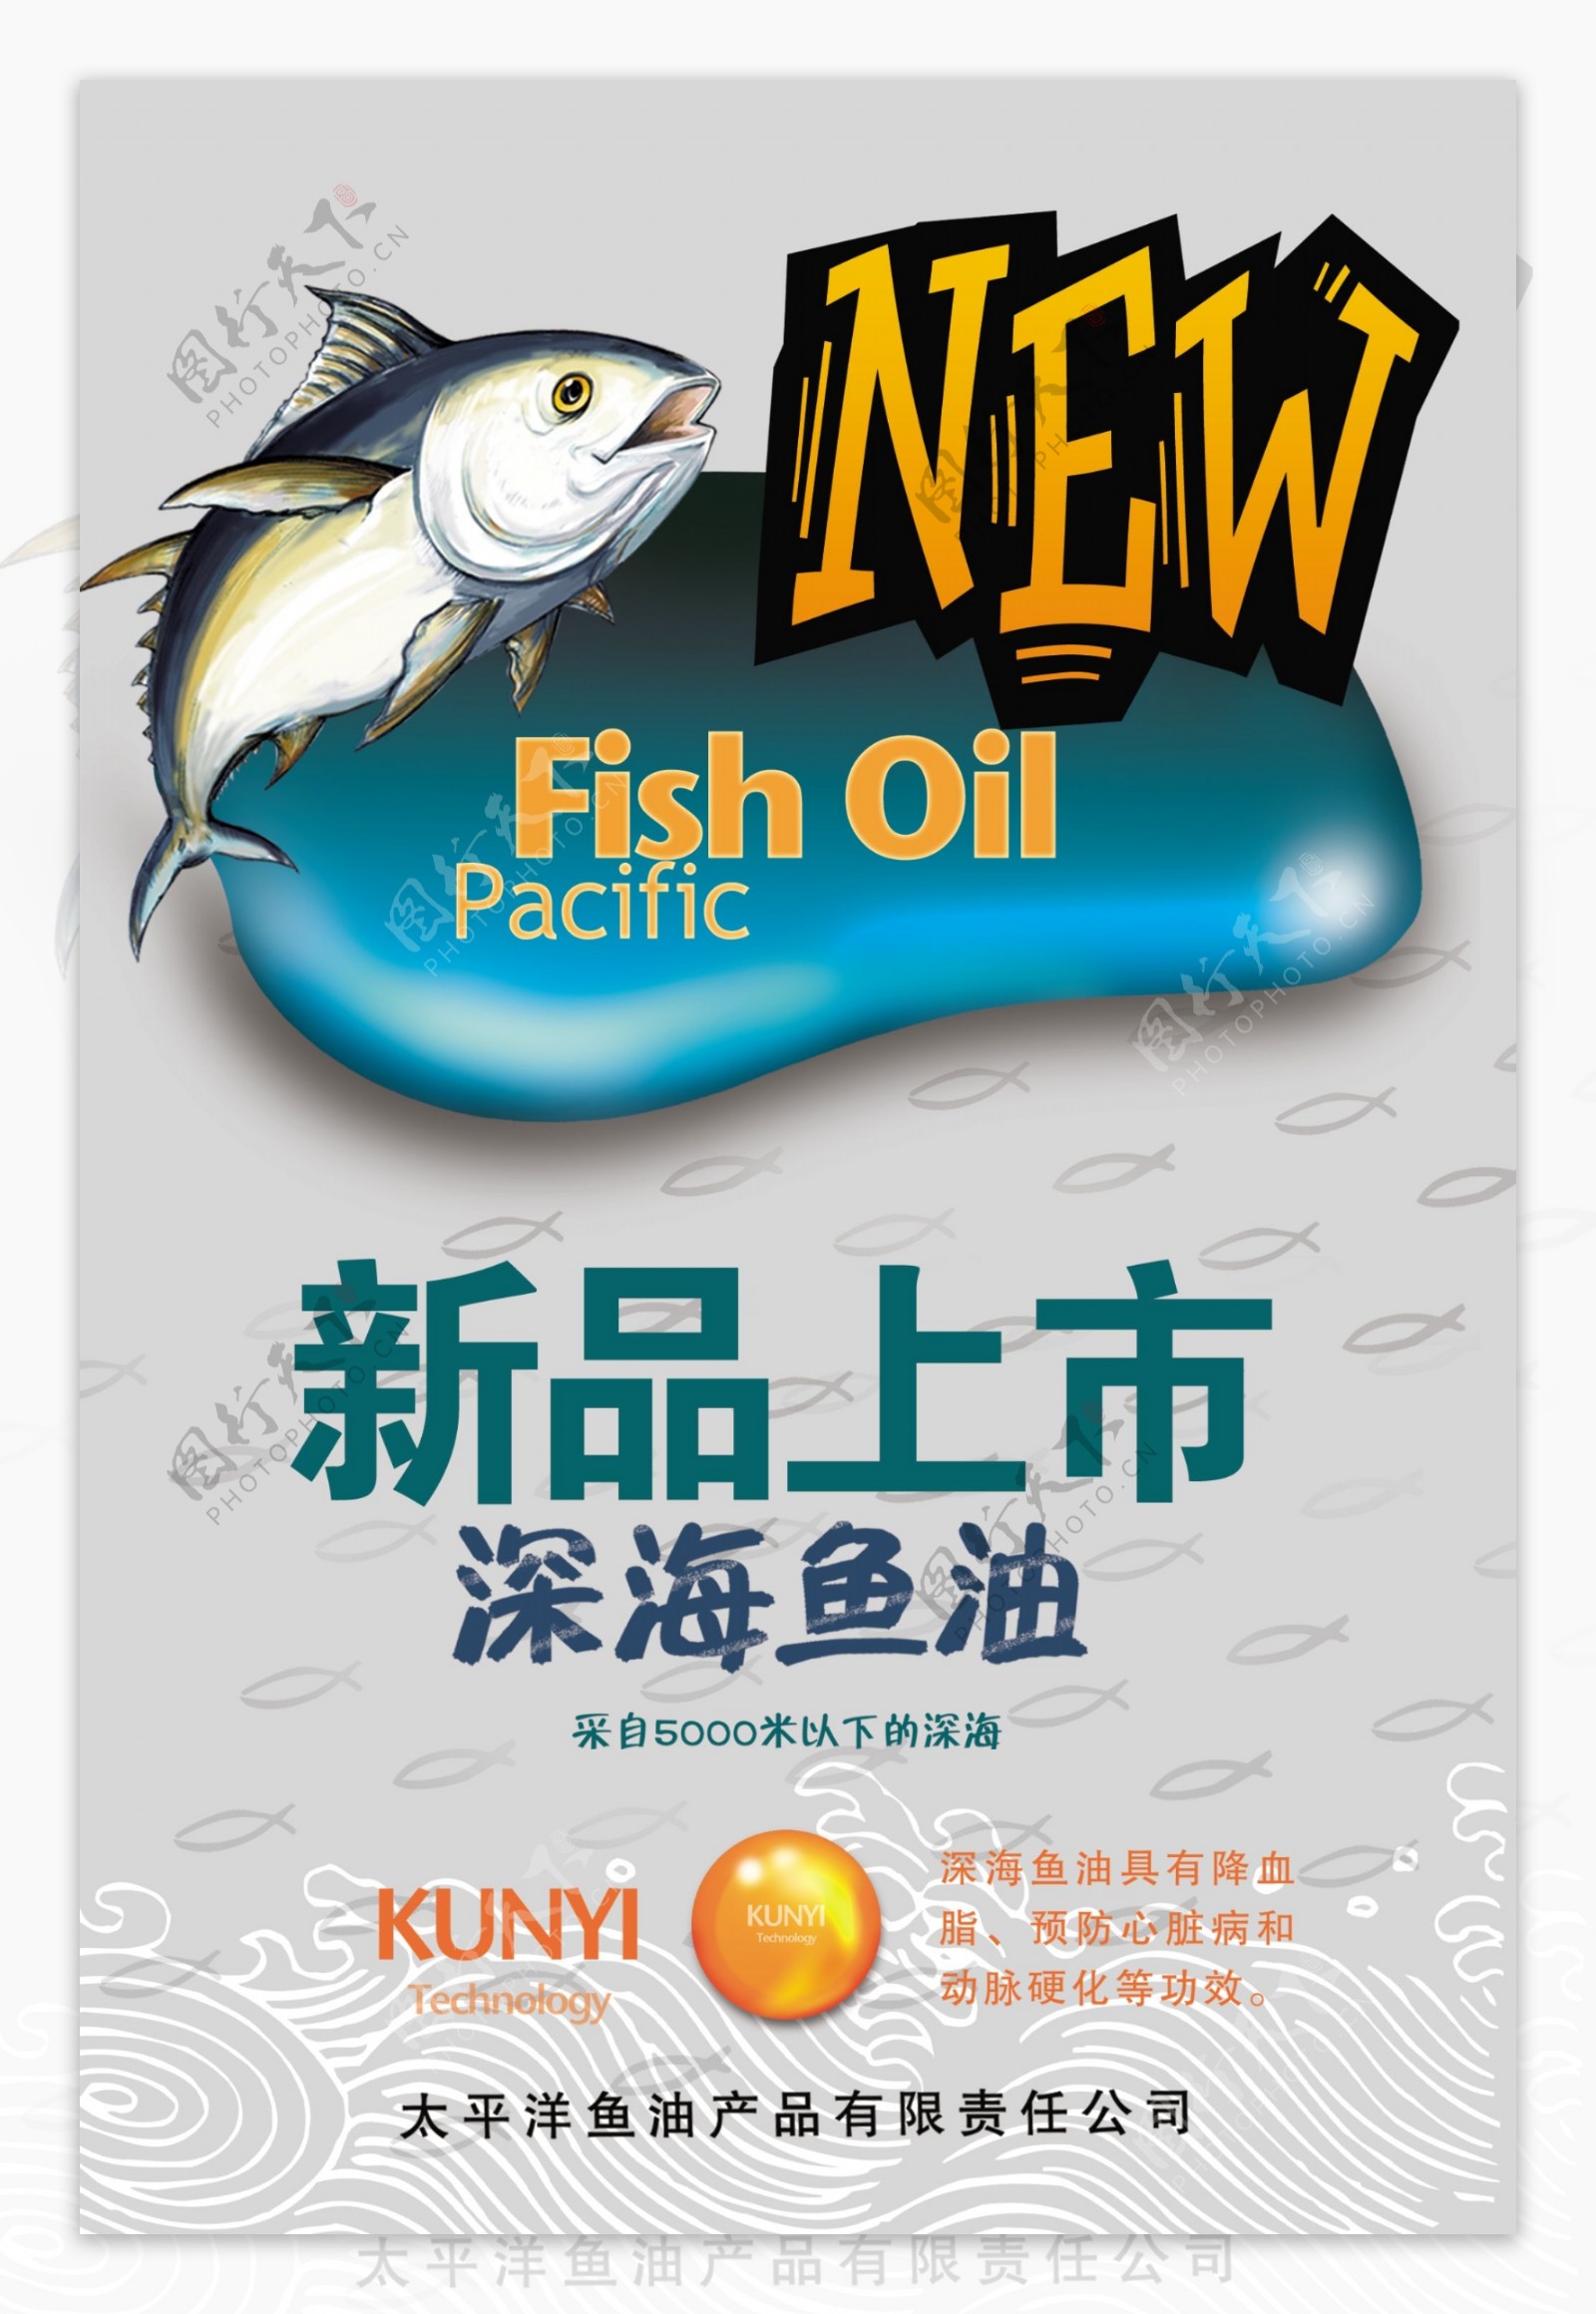 鱼油广告图片